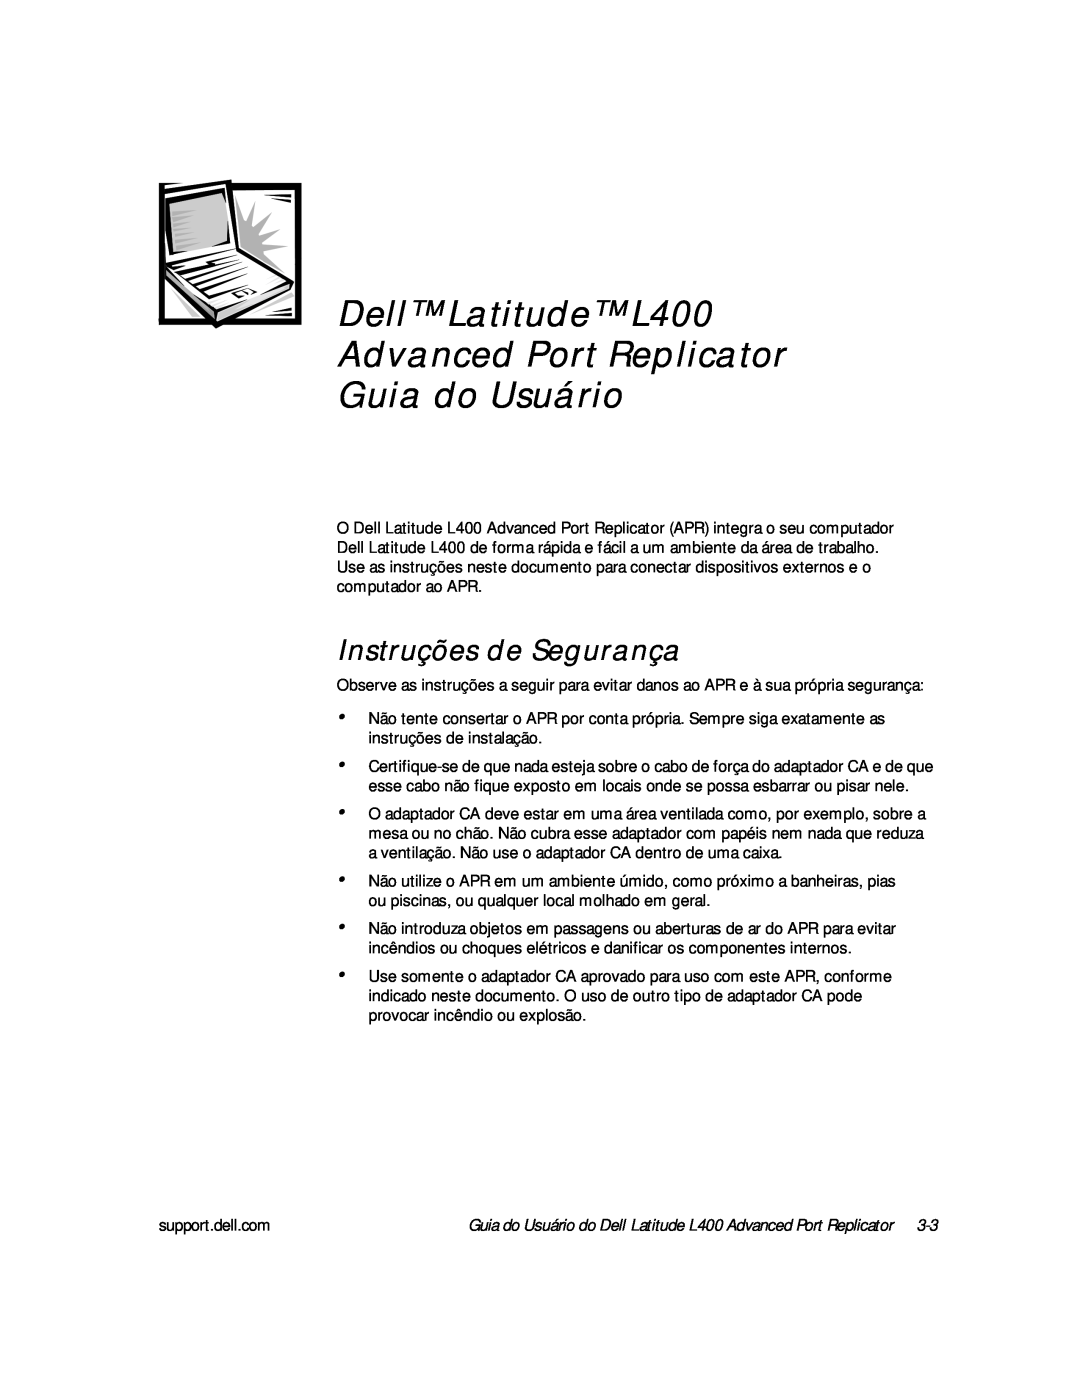 Dell manual Guia do Usuário, Instruções de Segurança, Dell Latitude L400 Advanced Port Replicator 